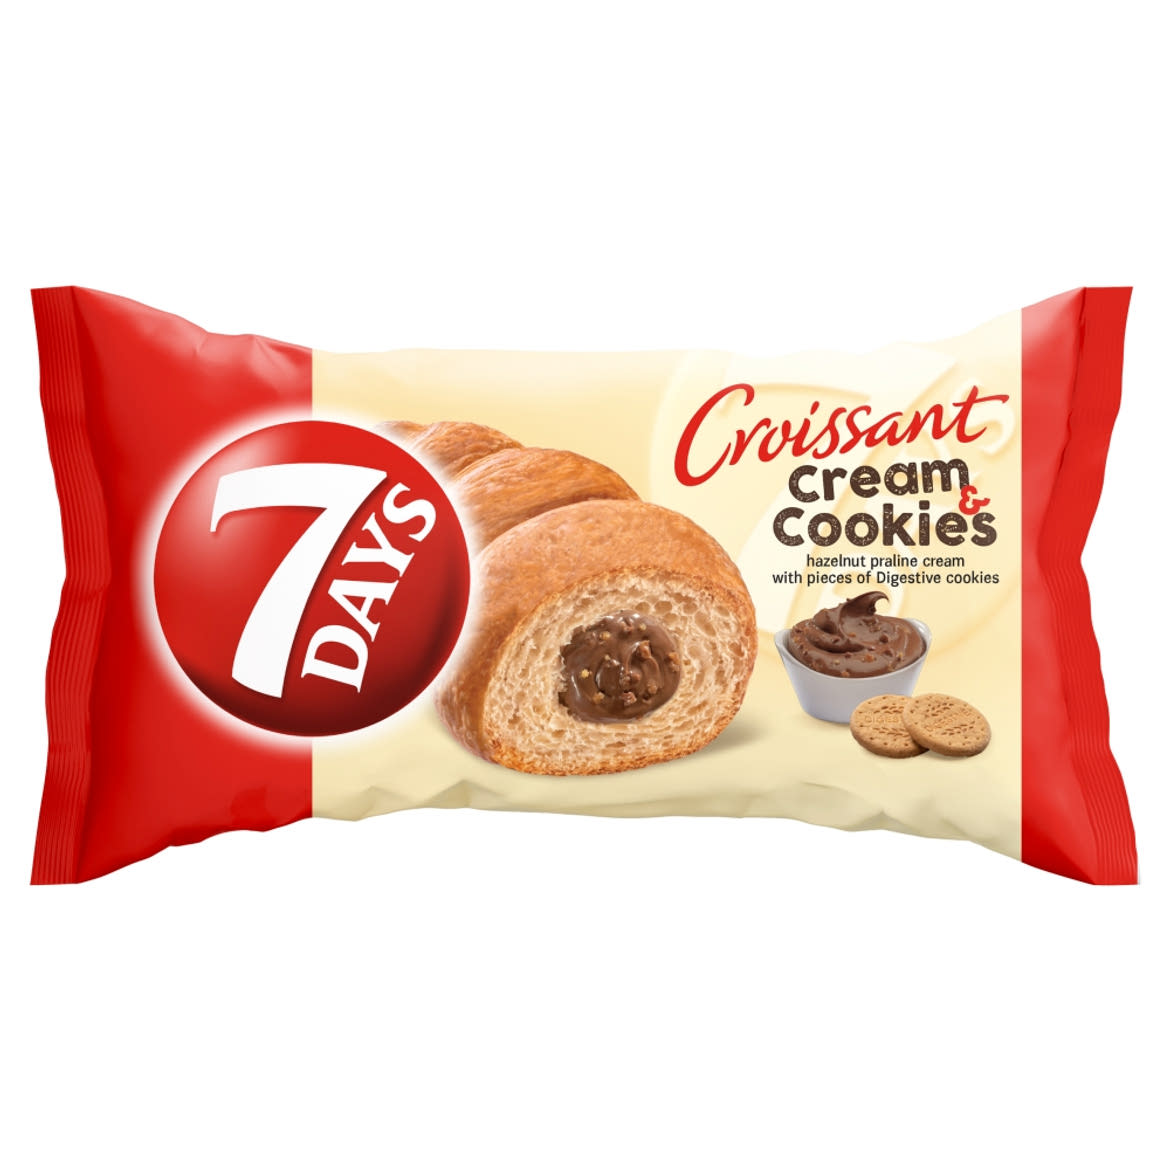 7DAYS Cream & Cookies mogyorókrémmel töltött croissant keksz darabokkal